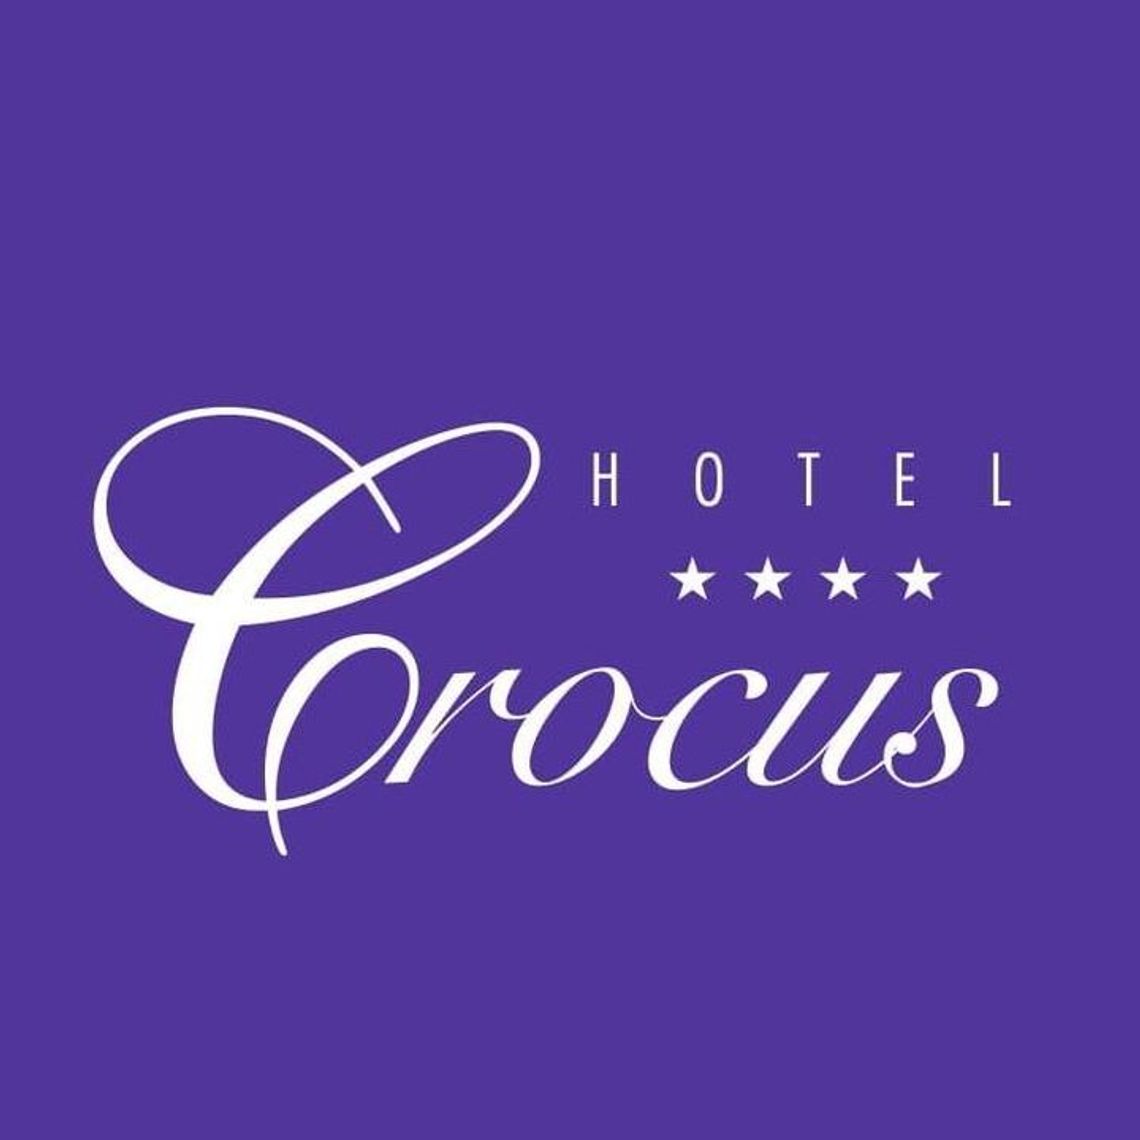 HOTEL CROCUS - Hotel w Zakopanem